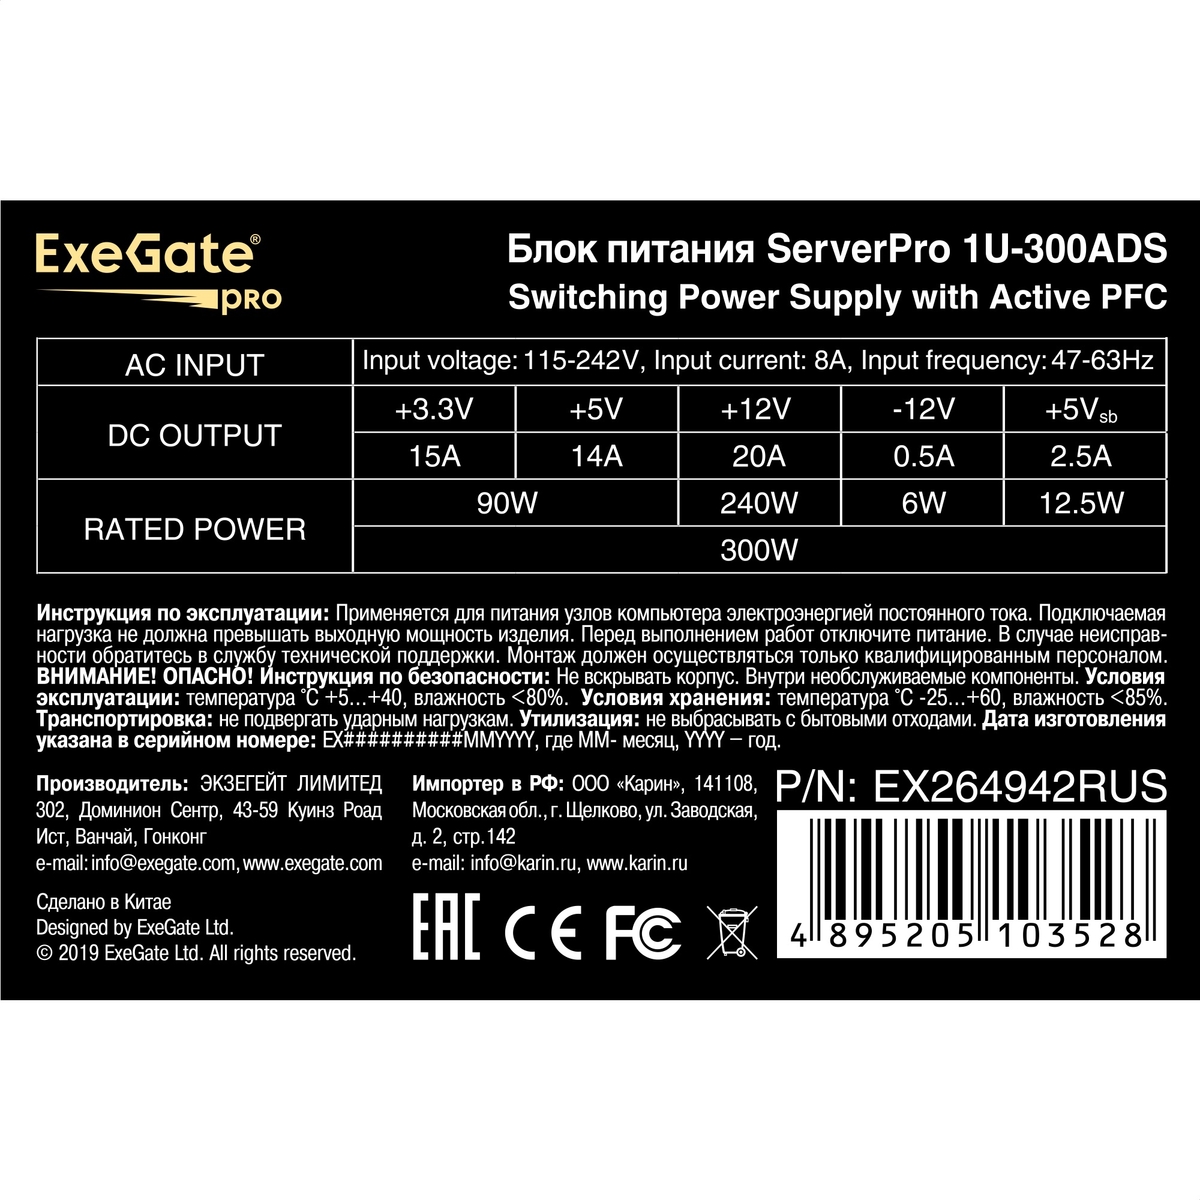 Серверный БП 300W ExeGate ServerPRO-1U-300ADS